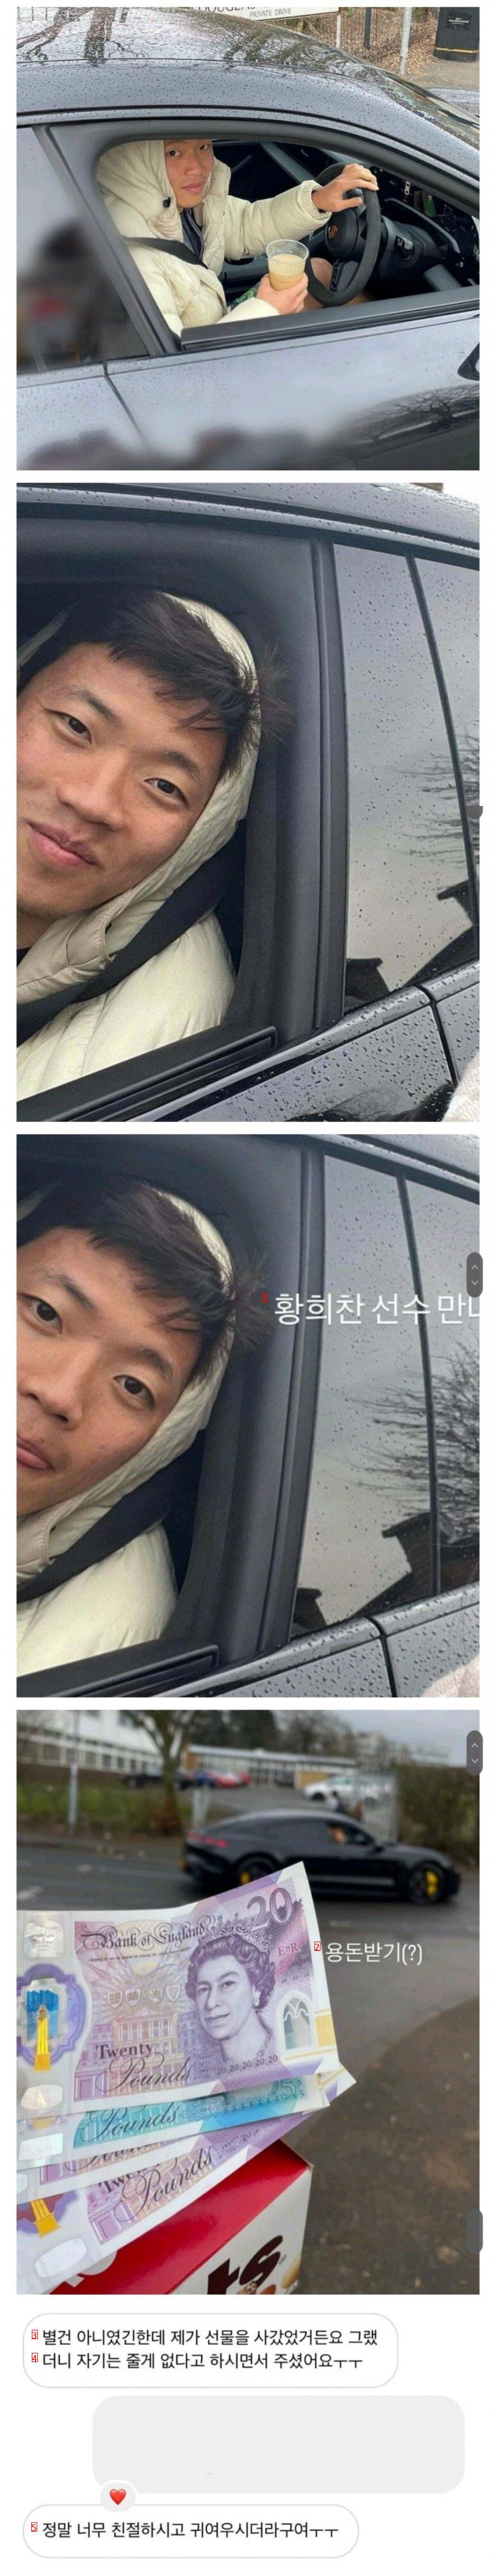 Hwang Heechan's update from a fan.jpg